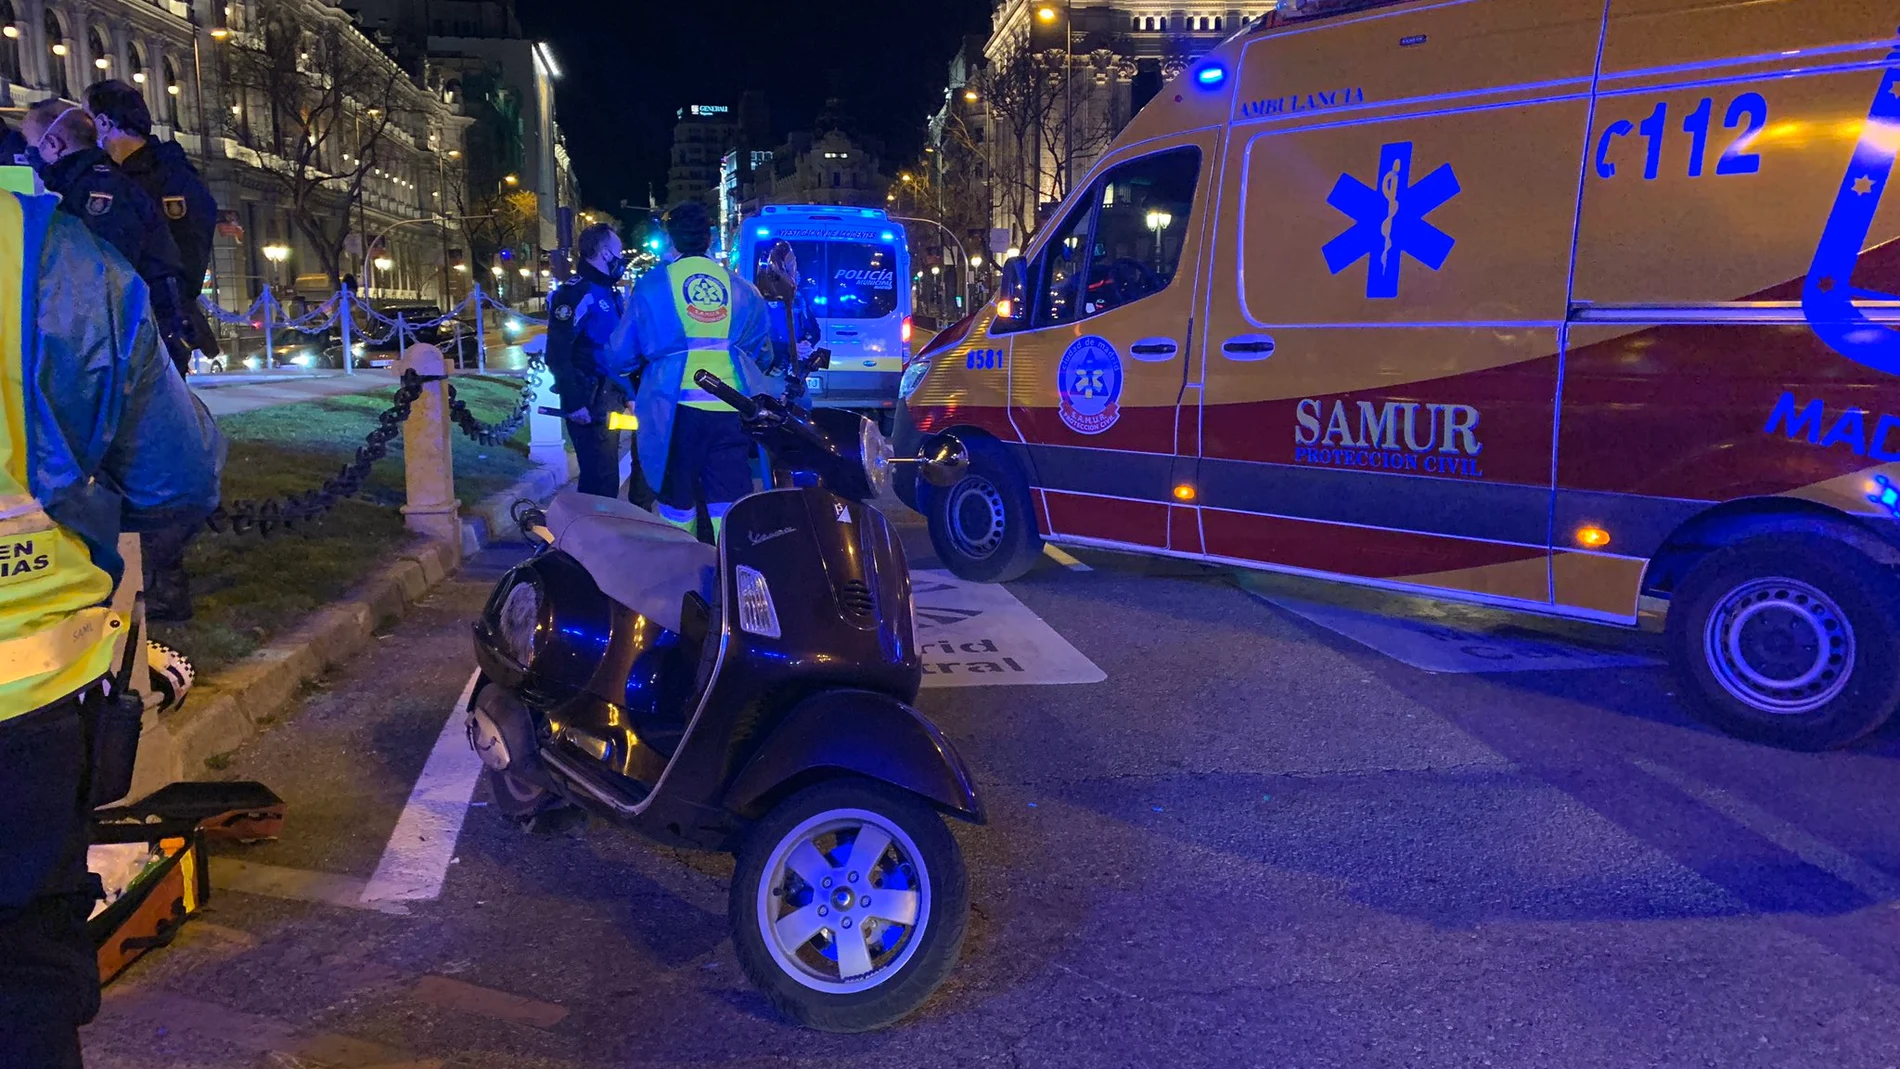 Fallece un motorista tras colisionar con otra motocicleta en Cibeles, en Madrid